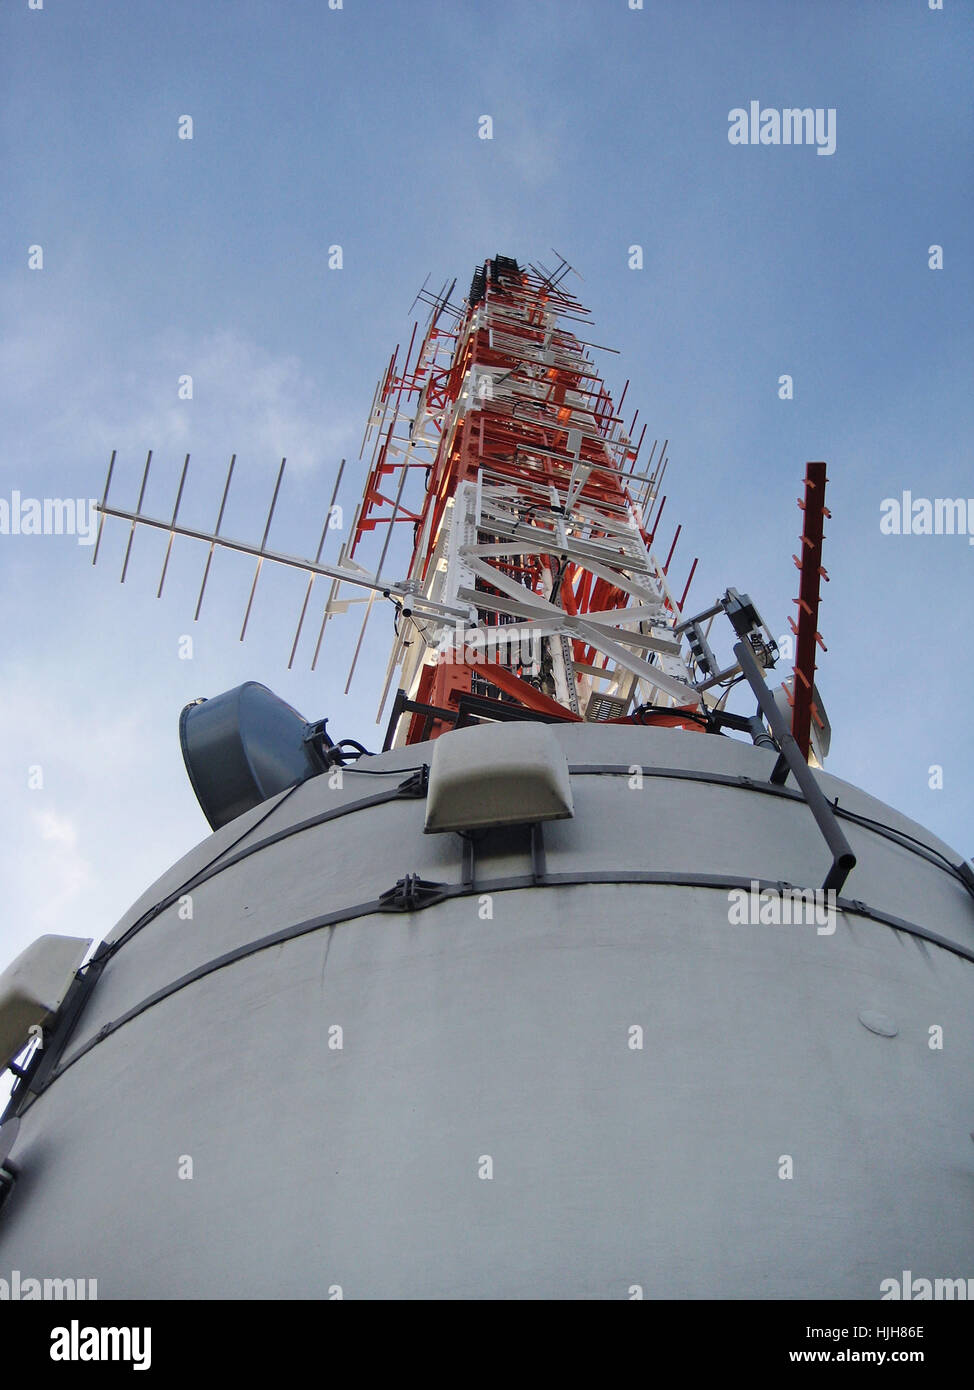 Antenne für Radio und TV-Sendungen am Fernsehturm Stuttgart (Deutschland  Stockfotografie - Alamy